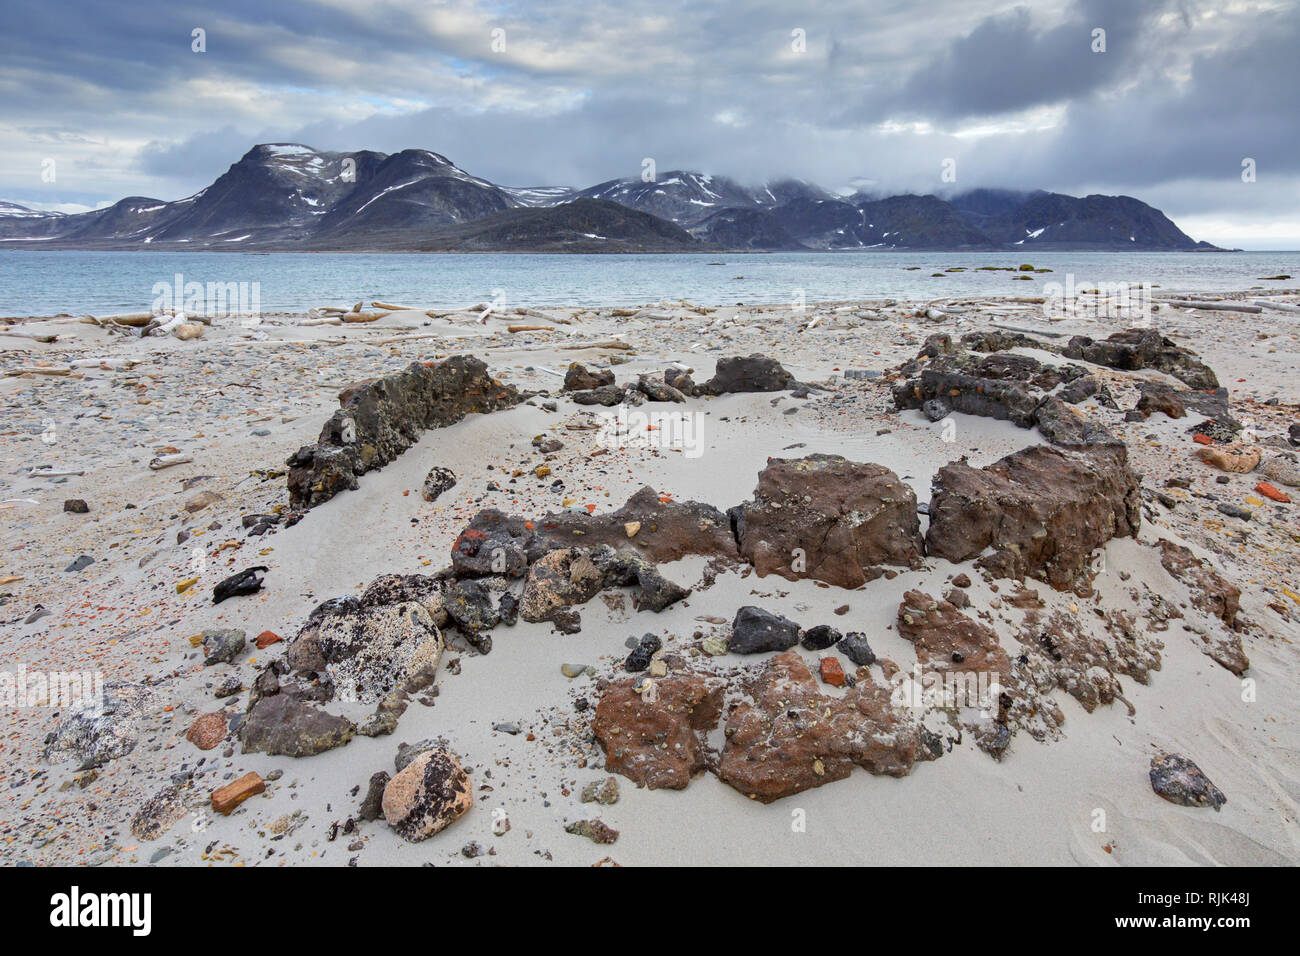 Siglo xvii restos de grasa, hornos de balleneros holandeses en Smeerenburg en Amsterdam / Isla Amsterdamøya, Svalbard / Spitsbergen, Noruega Foto de stock